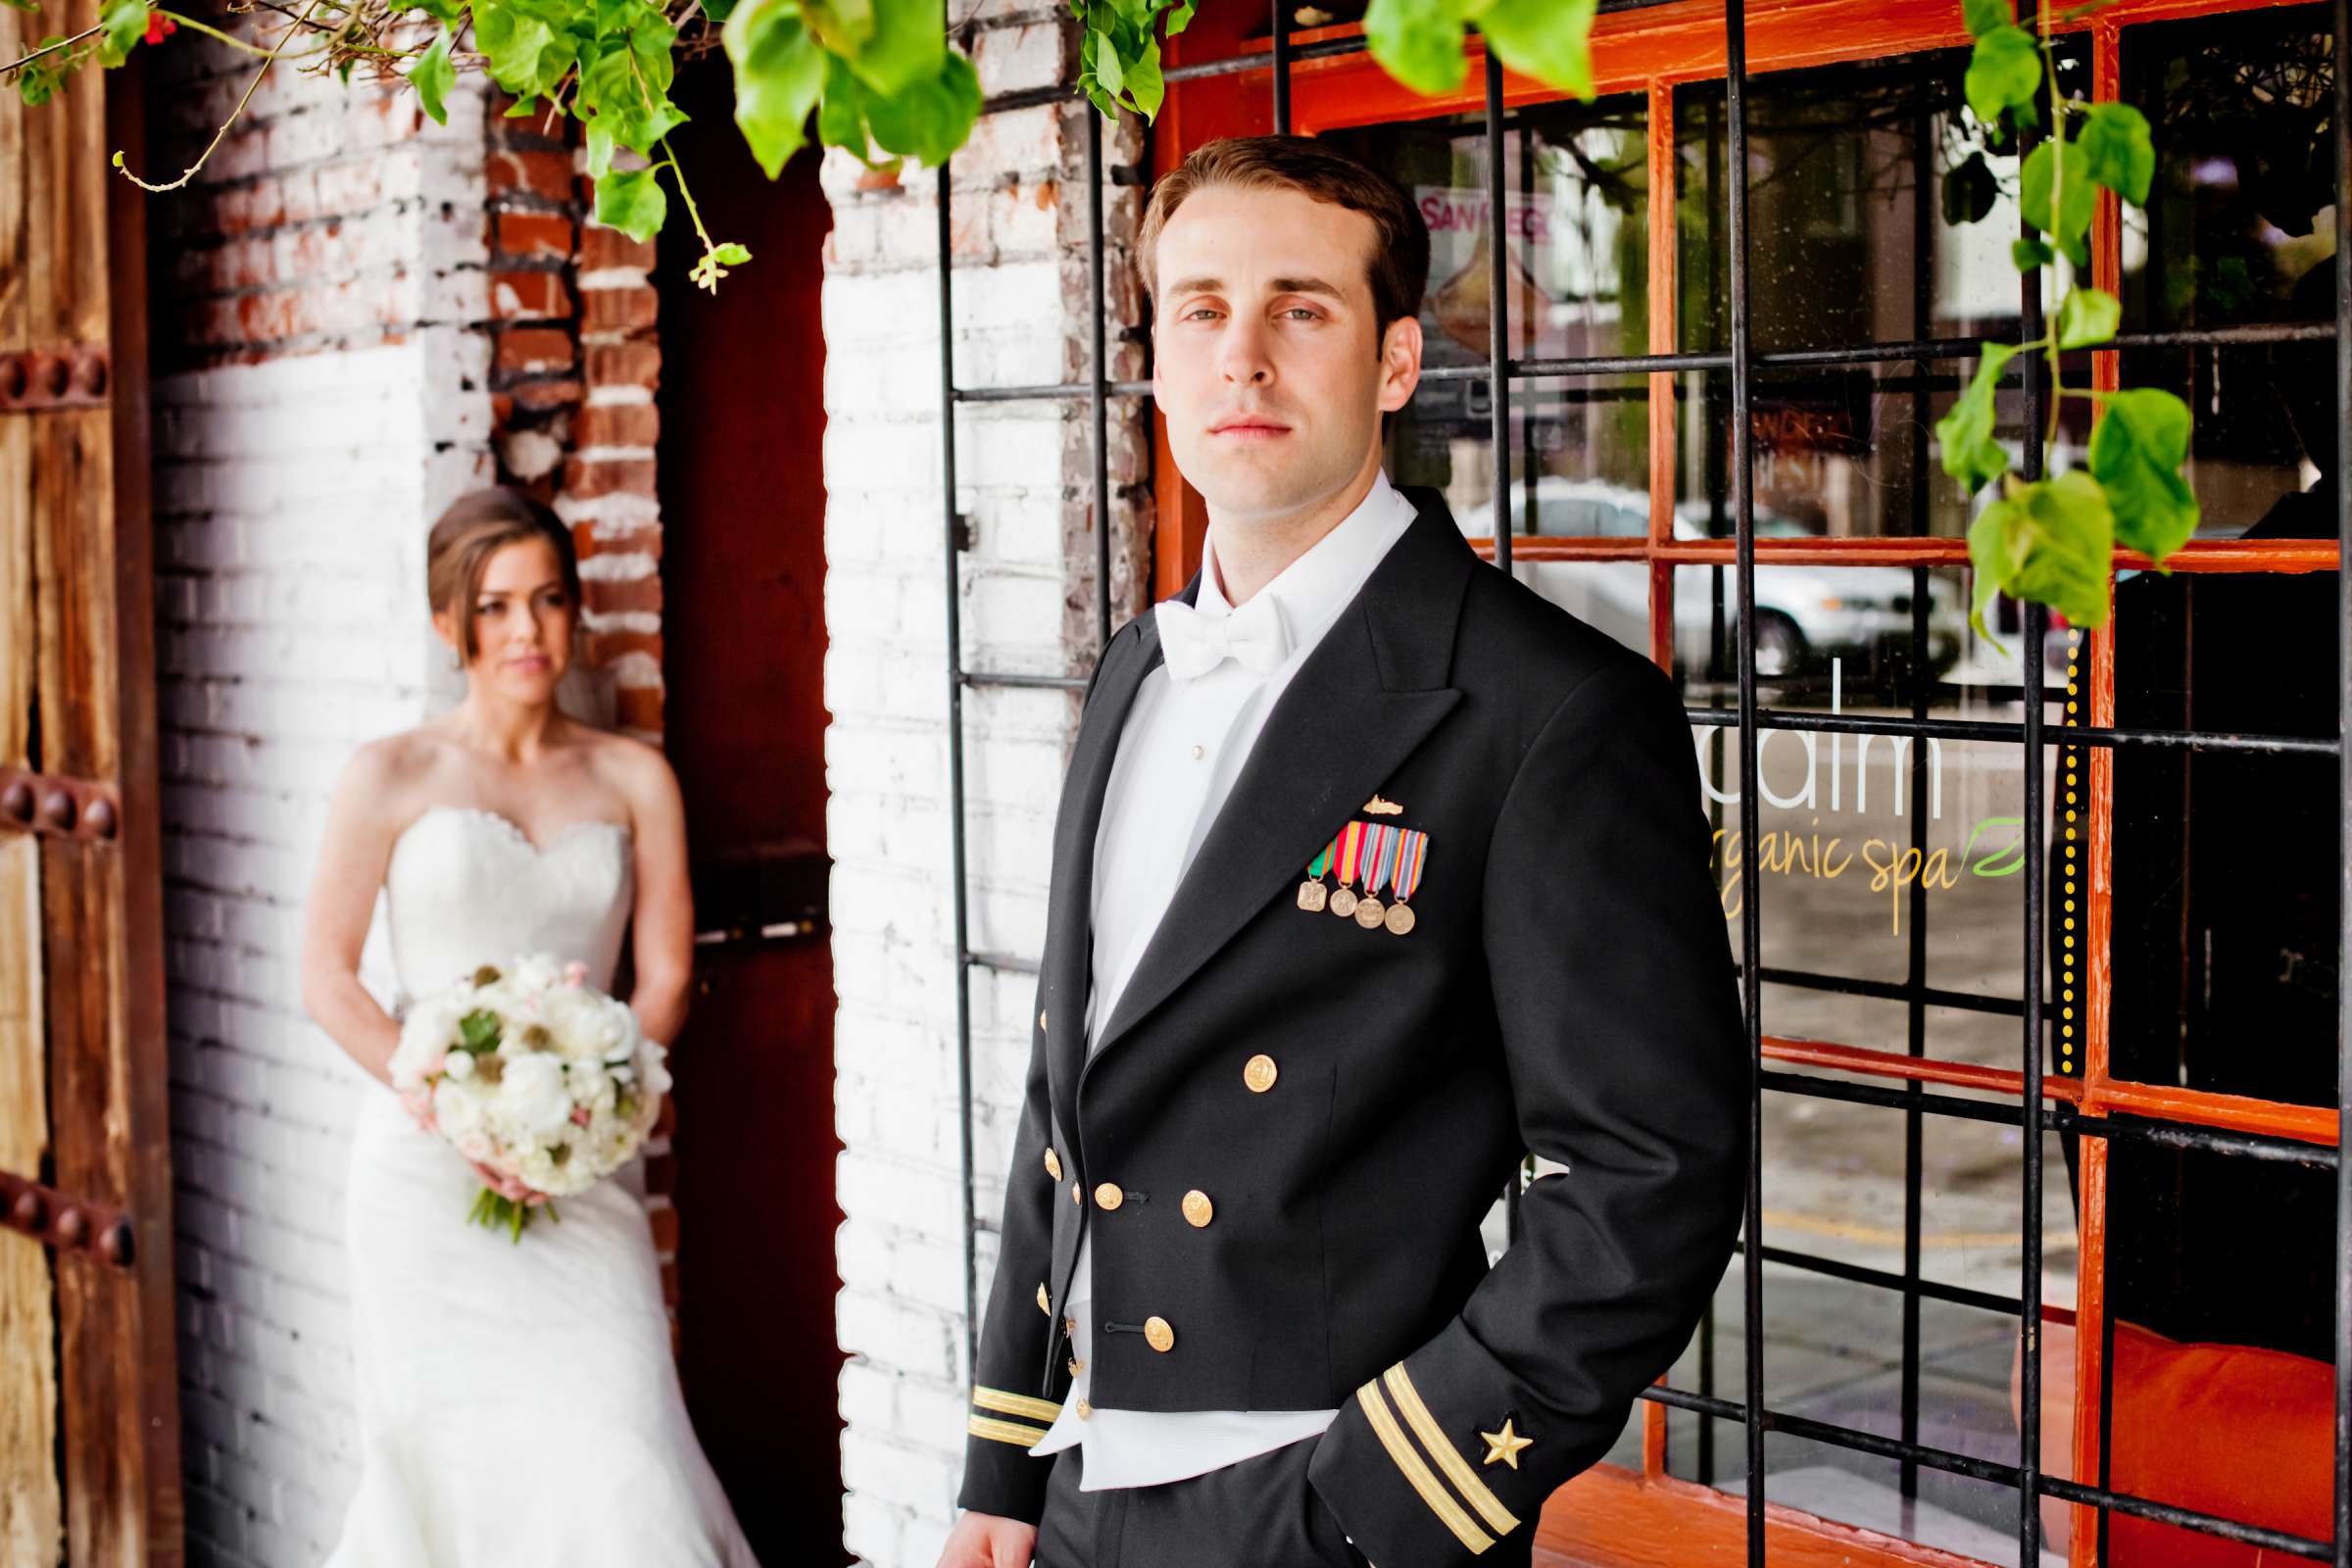 Admiral Kidd Club Wedding coordinated by I Do Weddings, Ashley and Rhett Wedding Photo #358460 by True Photography